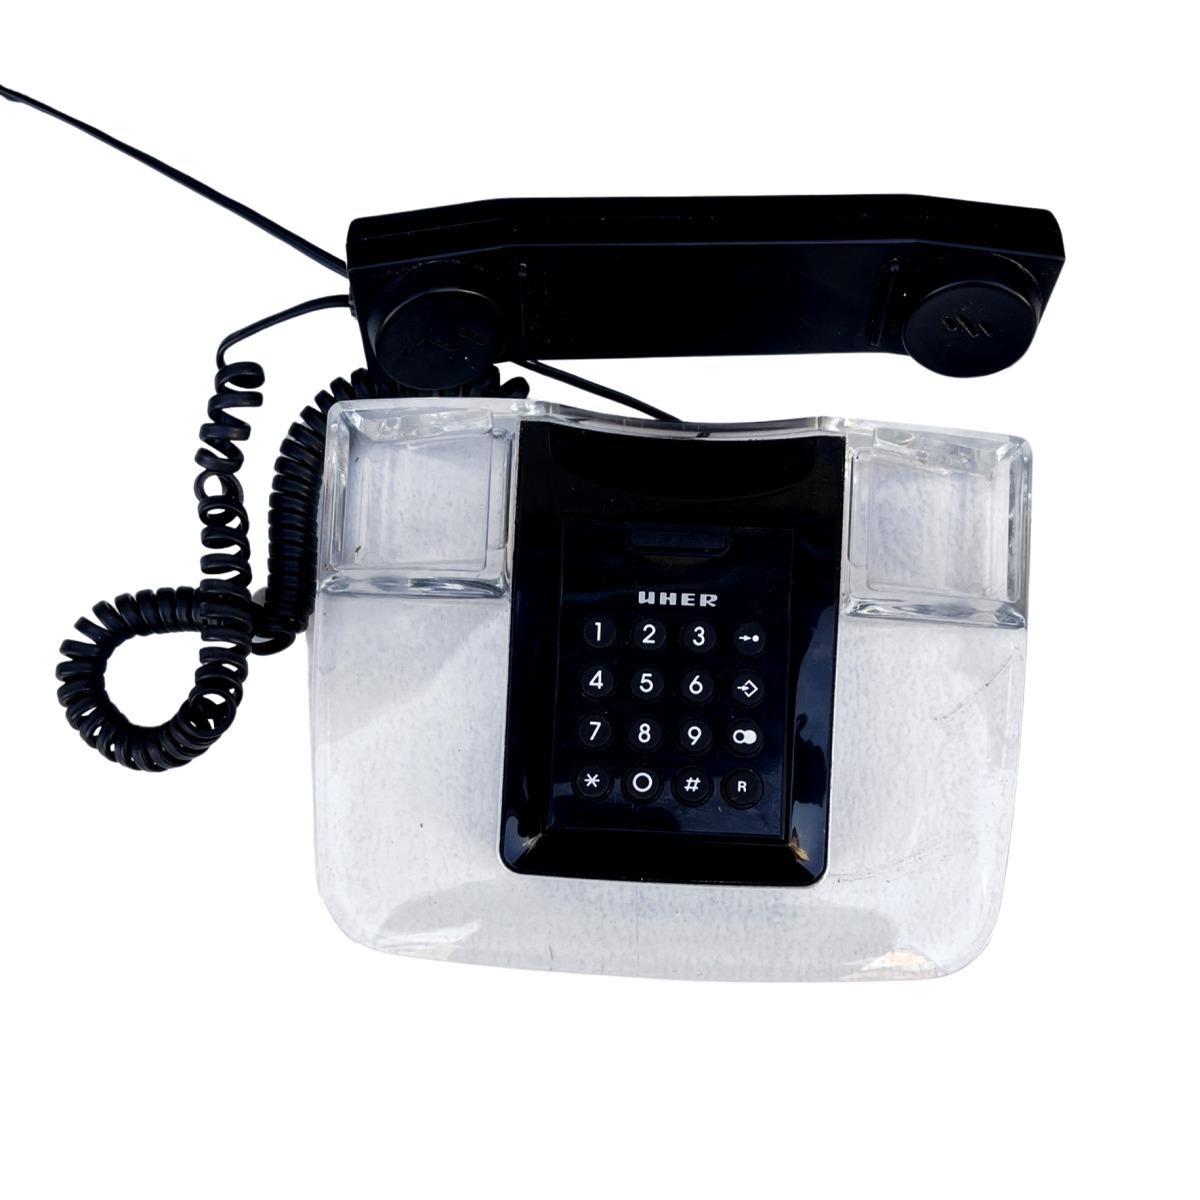 Włoski modernistyczny telefon stacjonarny z plexi, Decko, lata 90. 4 Full Screen